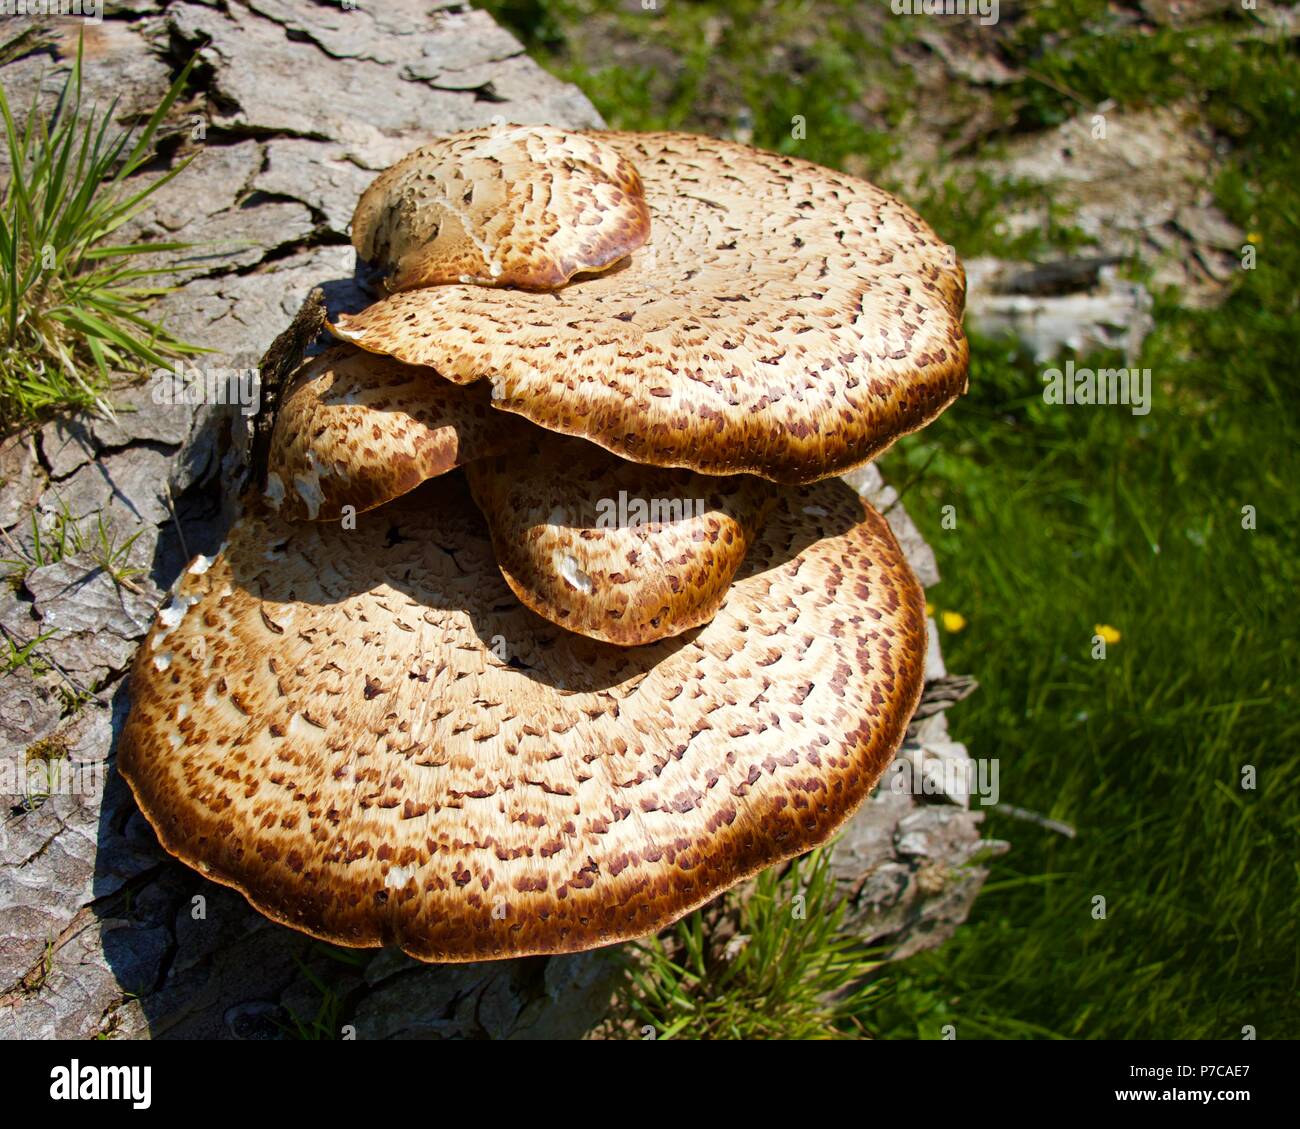 Fungus (Dryads Saddle) on rotting wood. Stock Photo